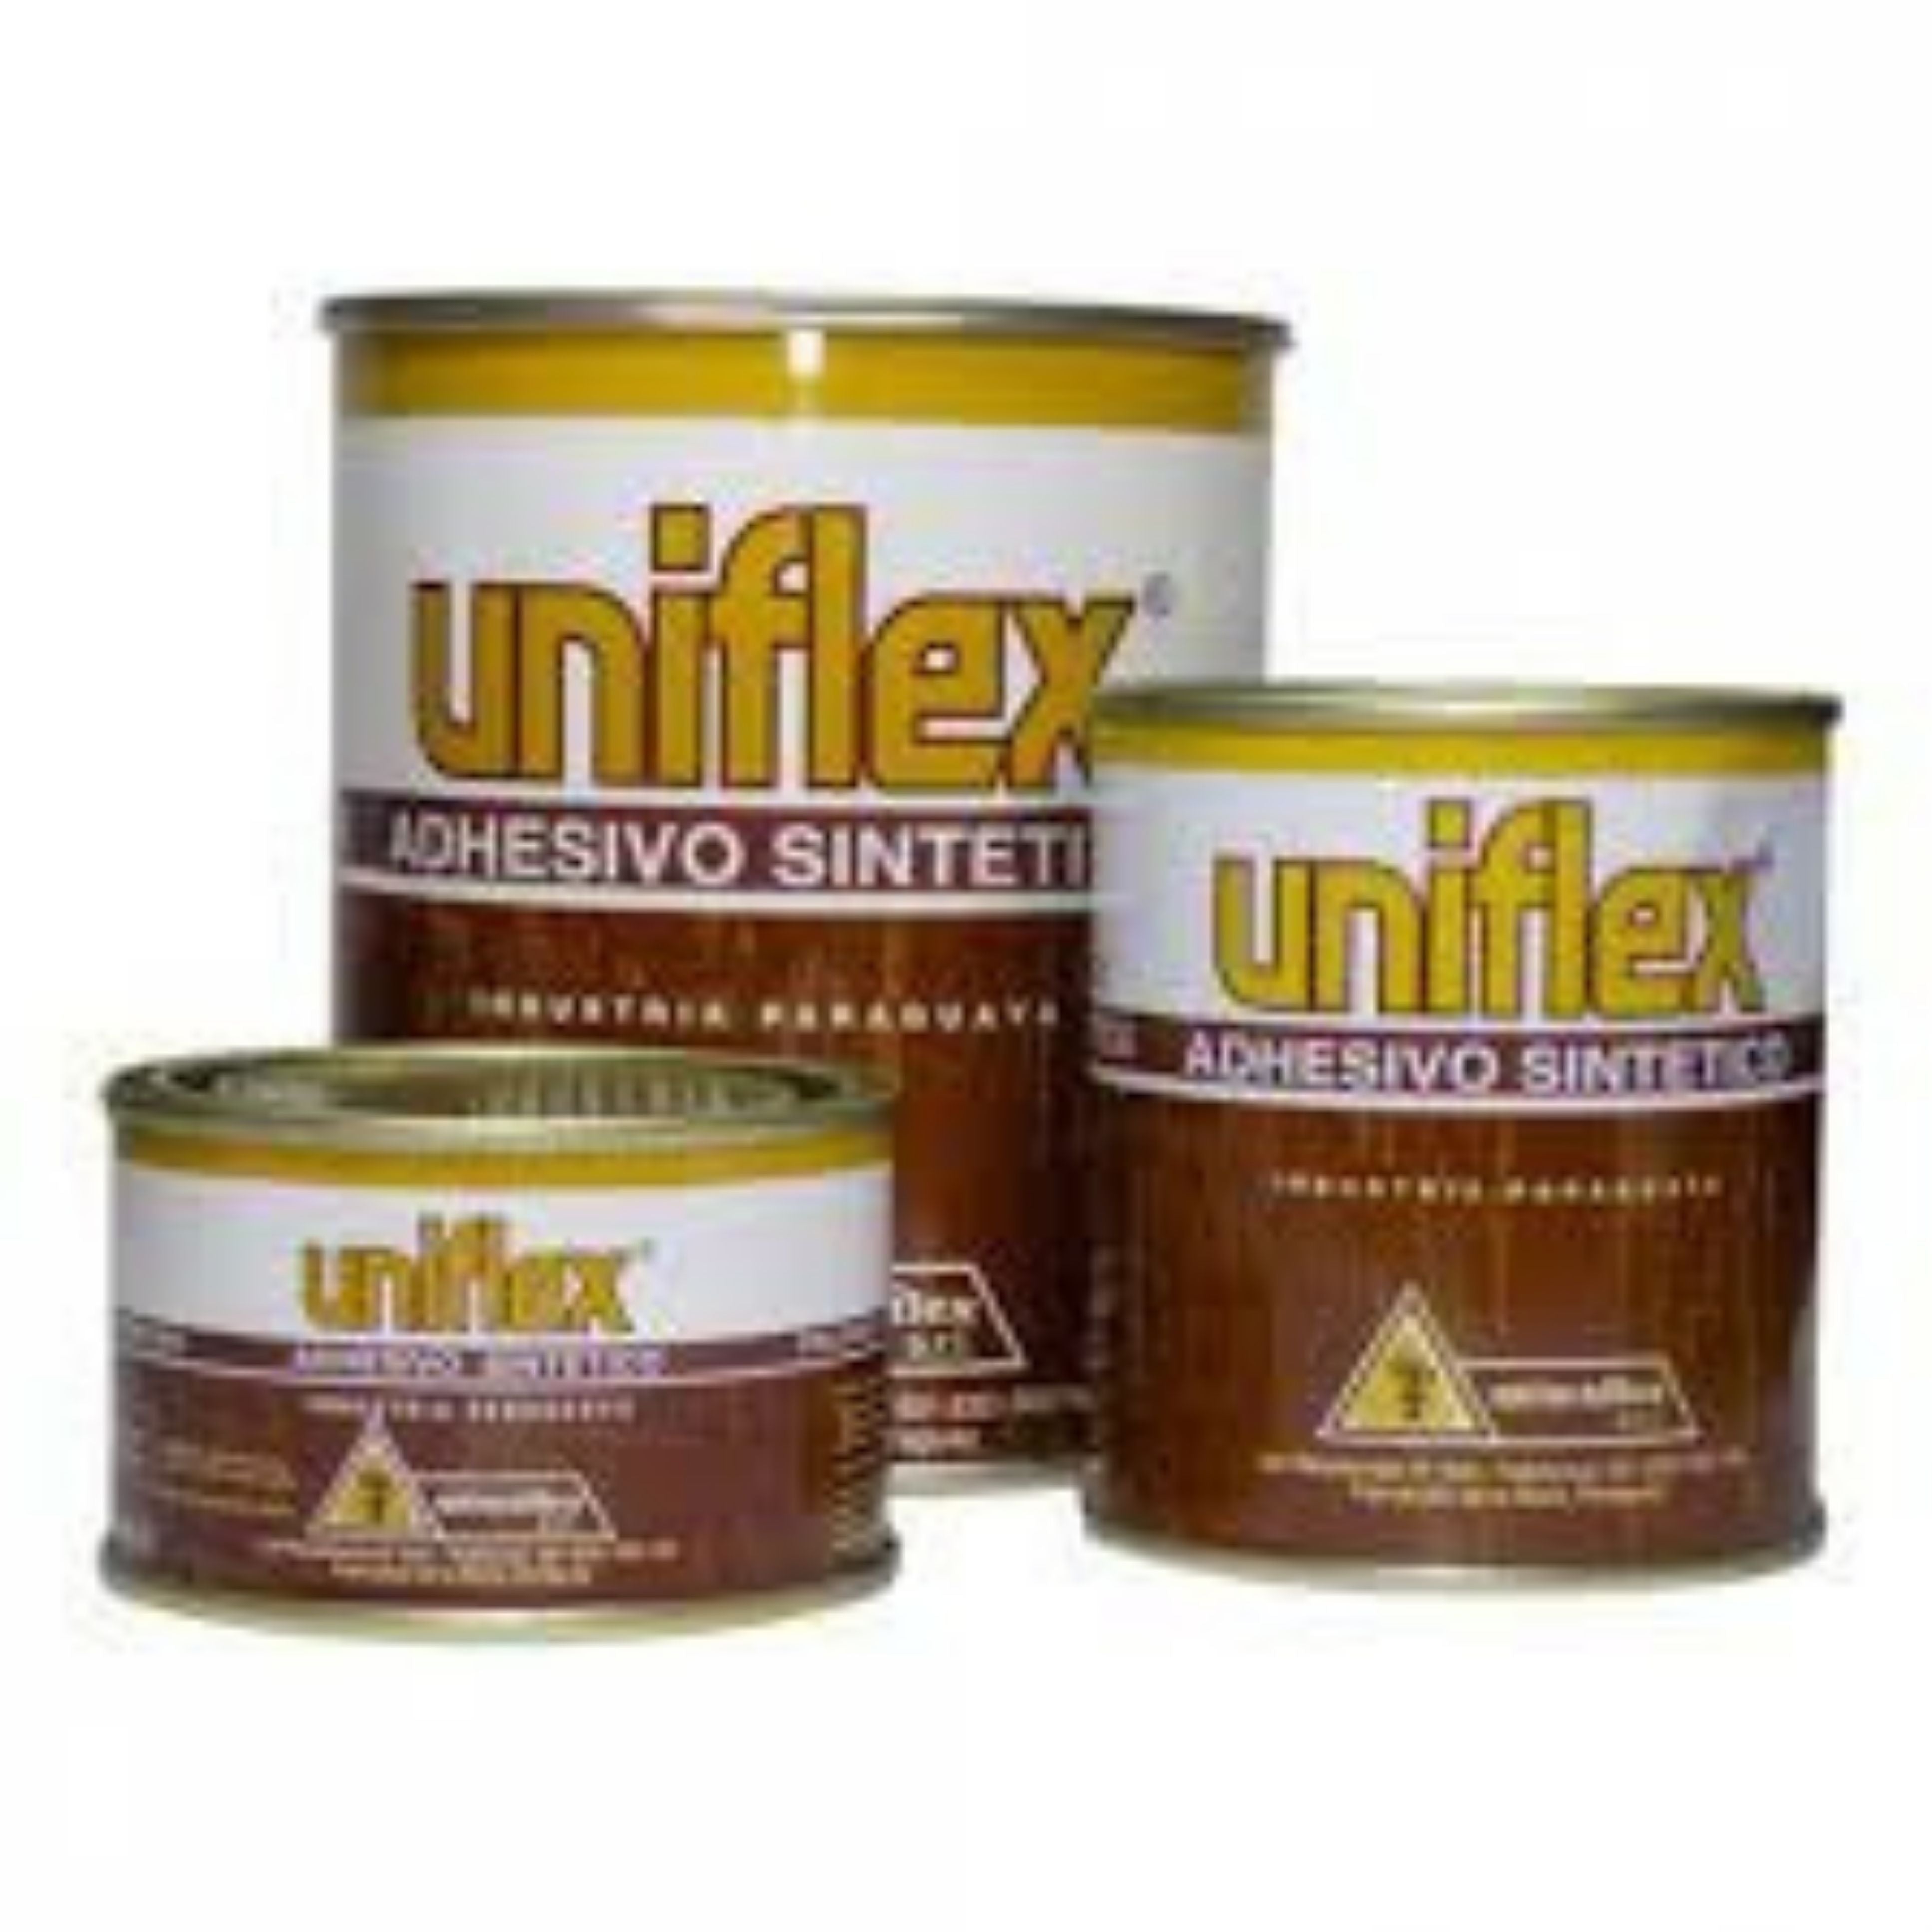 Uniflex – ferreteriacolarte